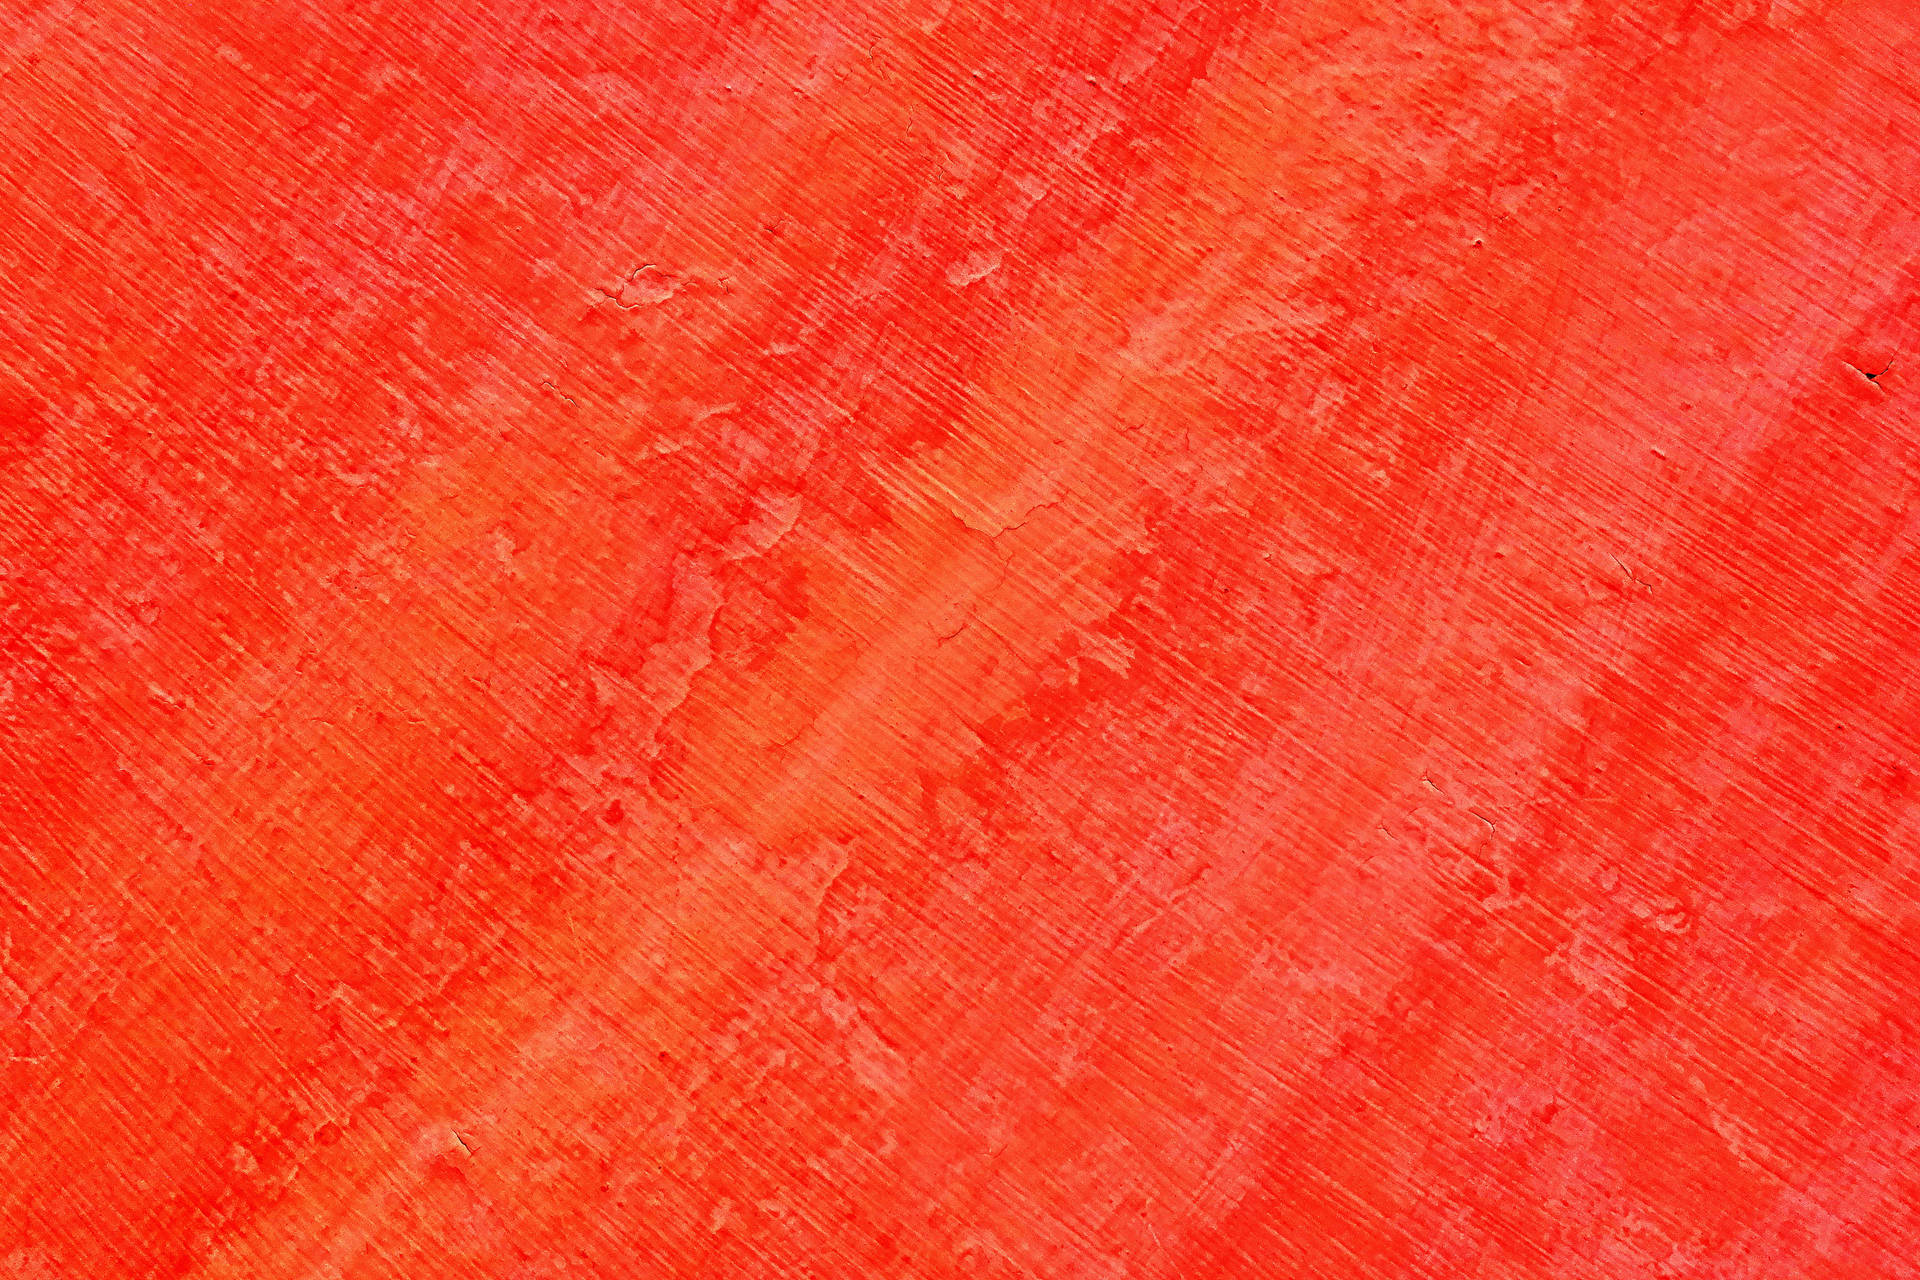 Textured Orange Wall Background